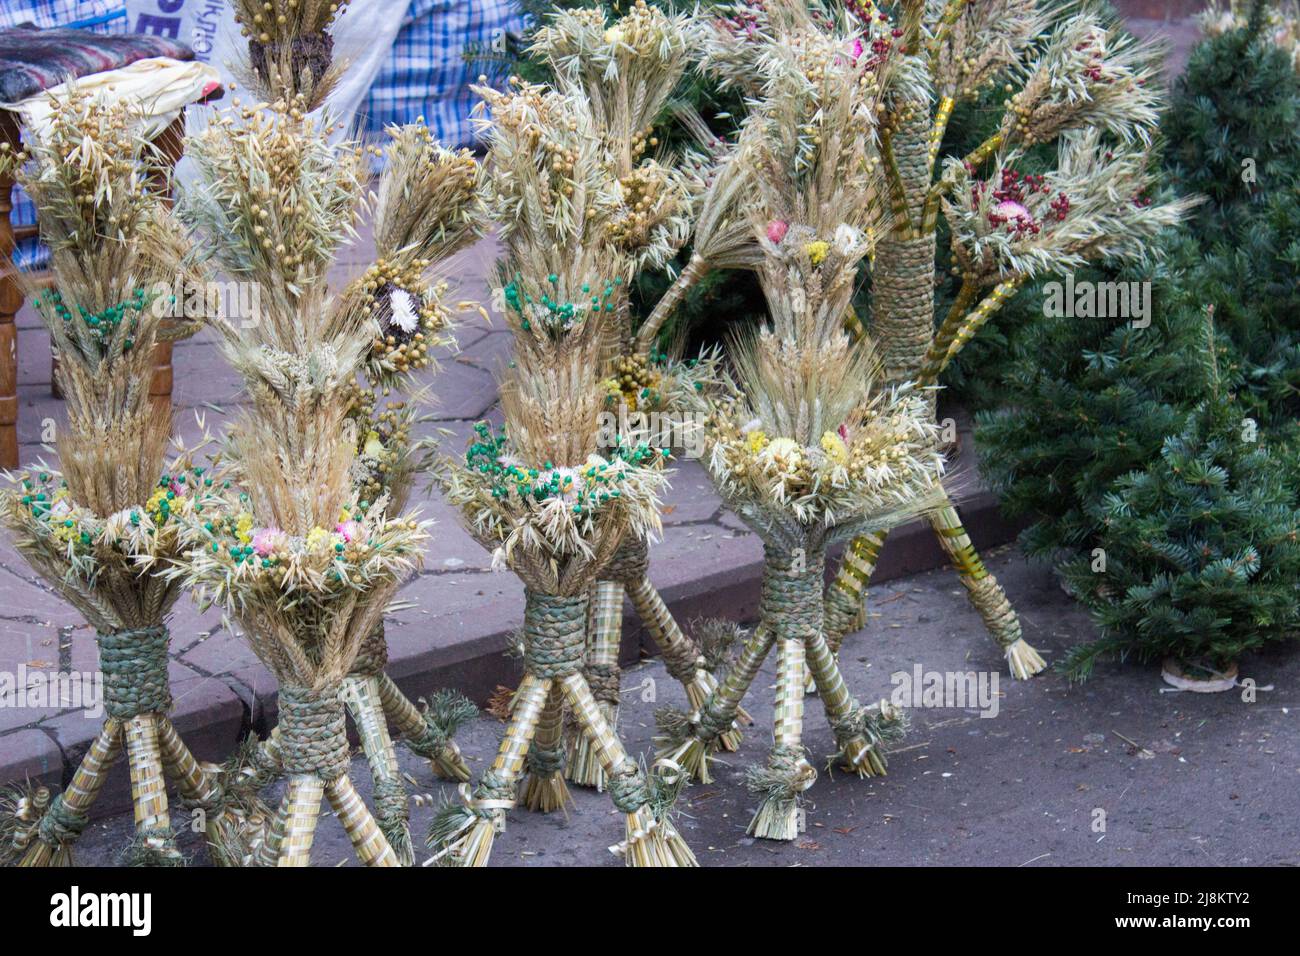 Didukh è un tradizionale ucraino simbolo - decorative reap fatta